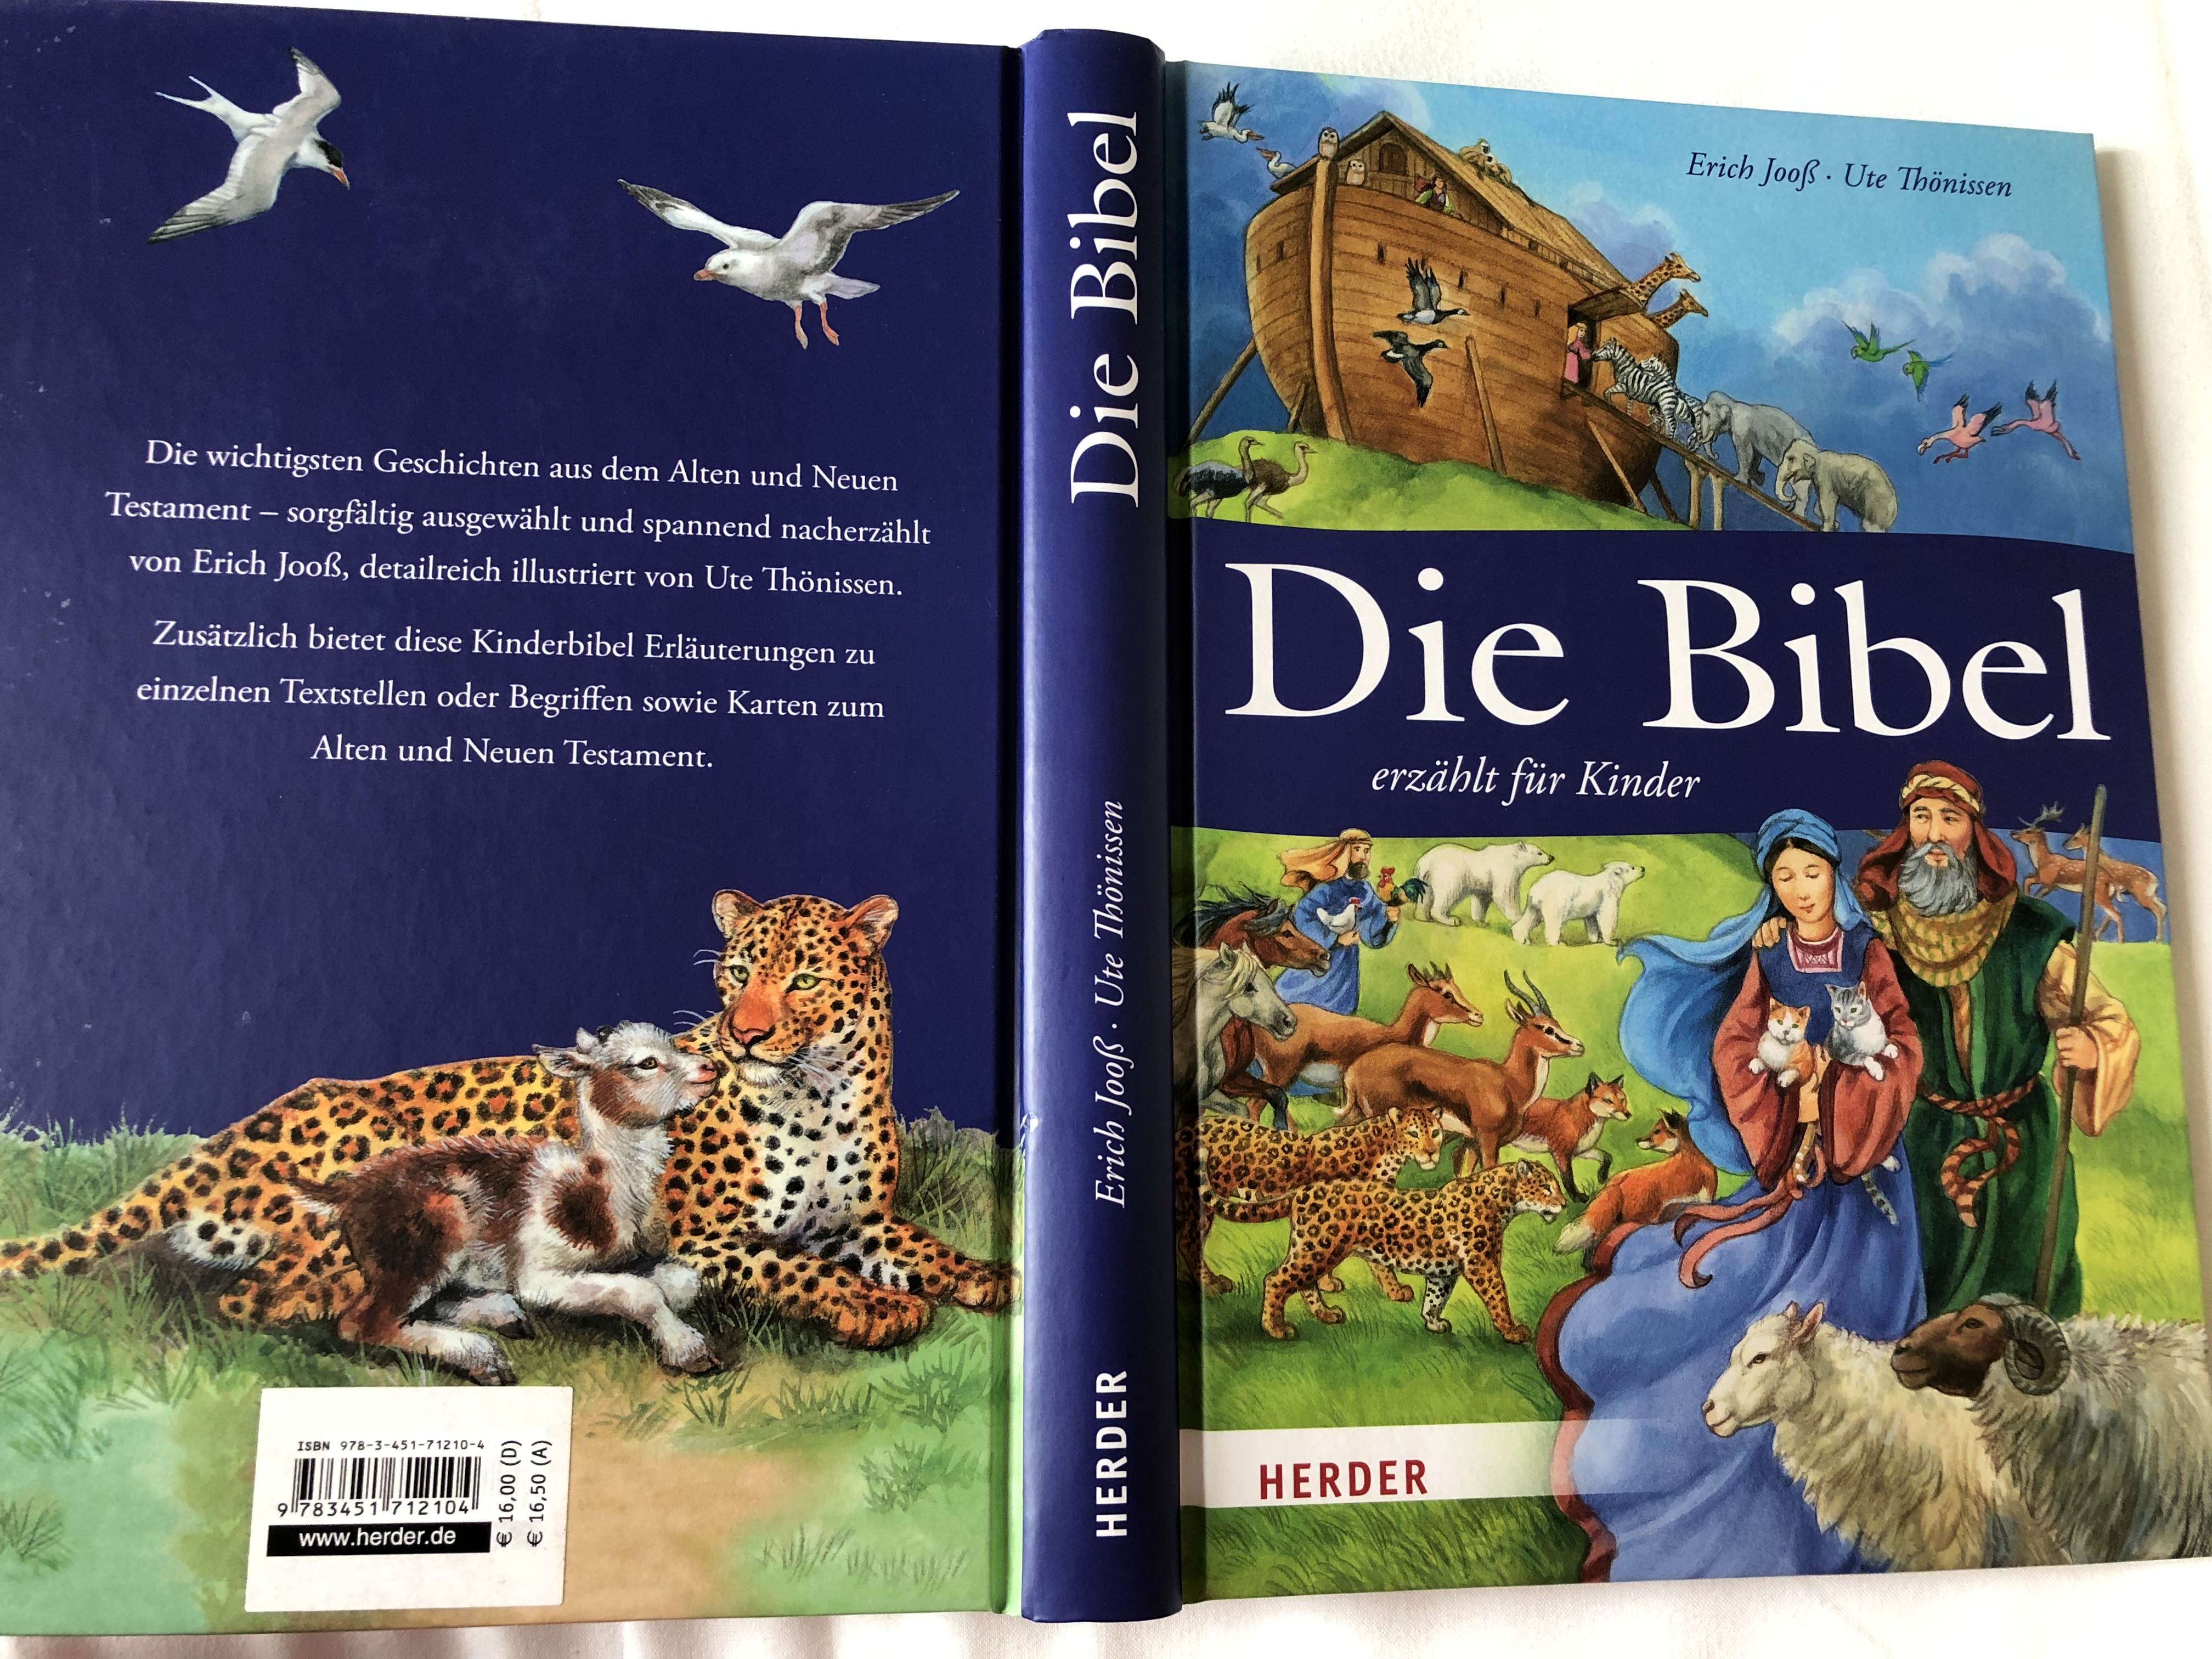 die-bibel-erz-hlt-f-r-kinder-by-erich-joo-ute-th-nissen-the-bible-retold-for-children-in-german-language-color-illustrations-hardcover-2013-herder-2-.jpg